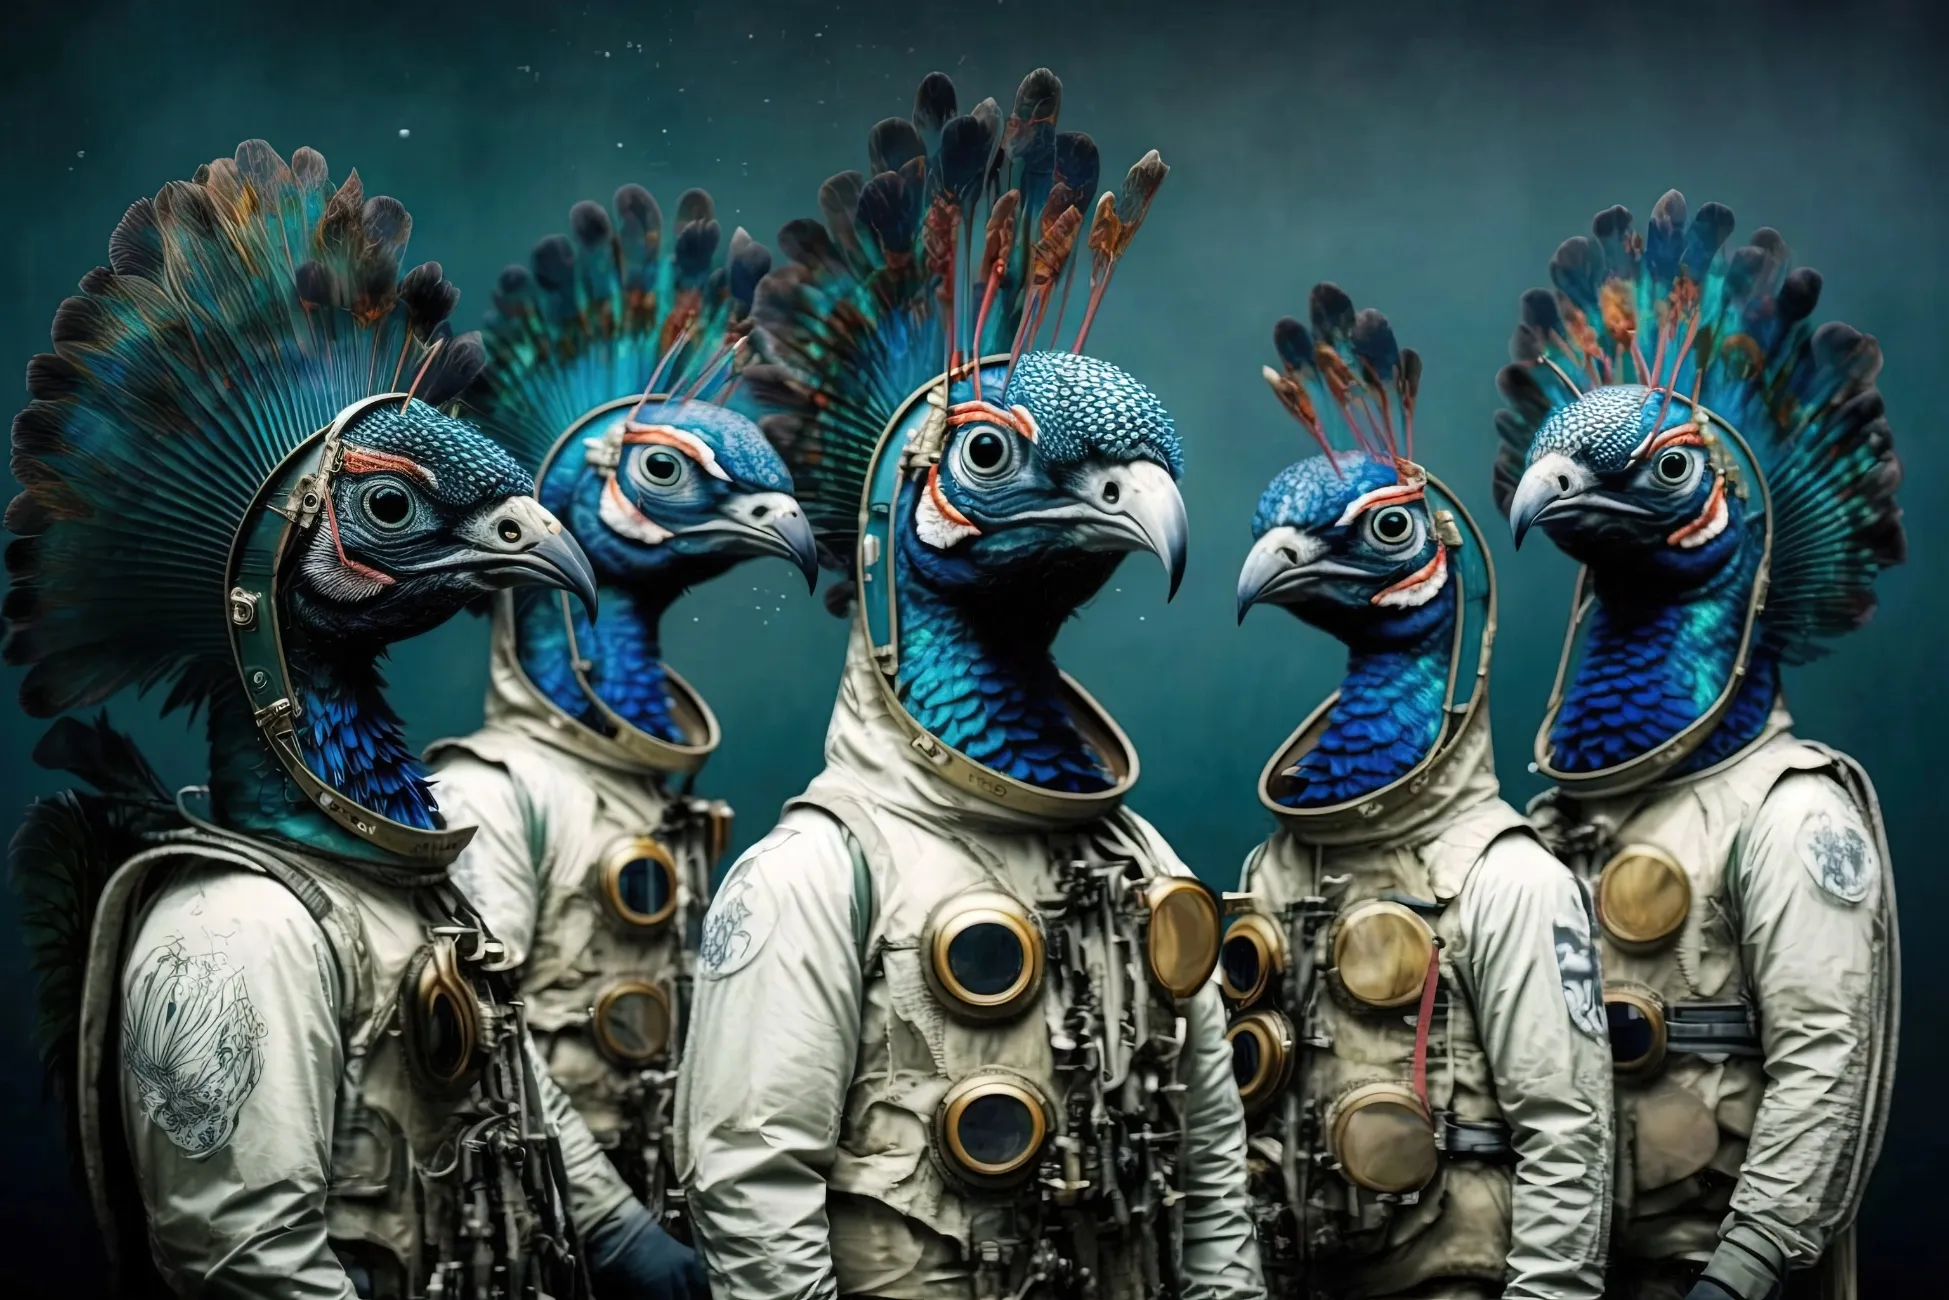 Eine Gruppe von Pfauen in Astronautenanzügen steht zusammen vor einem dunklen Hintergrund mit Farbverlauf.